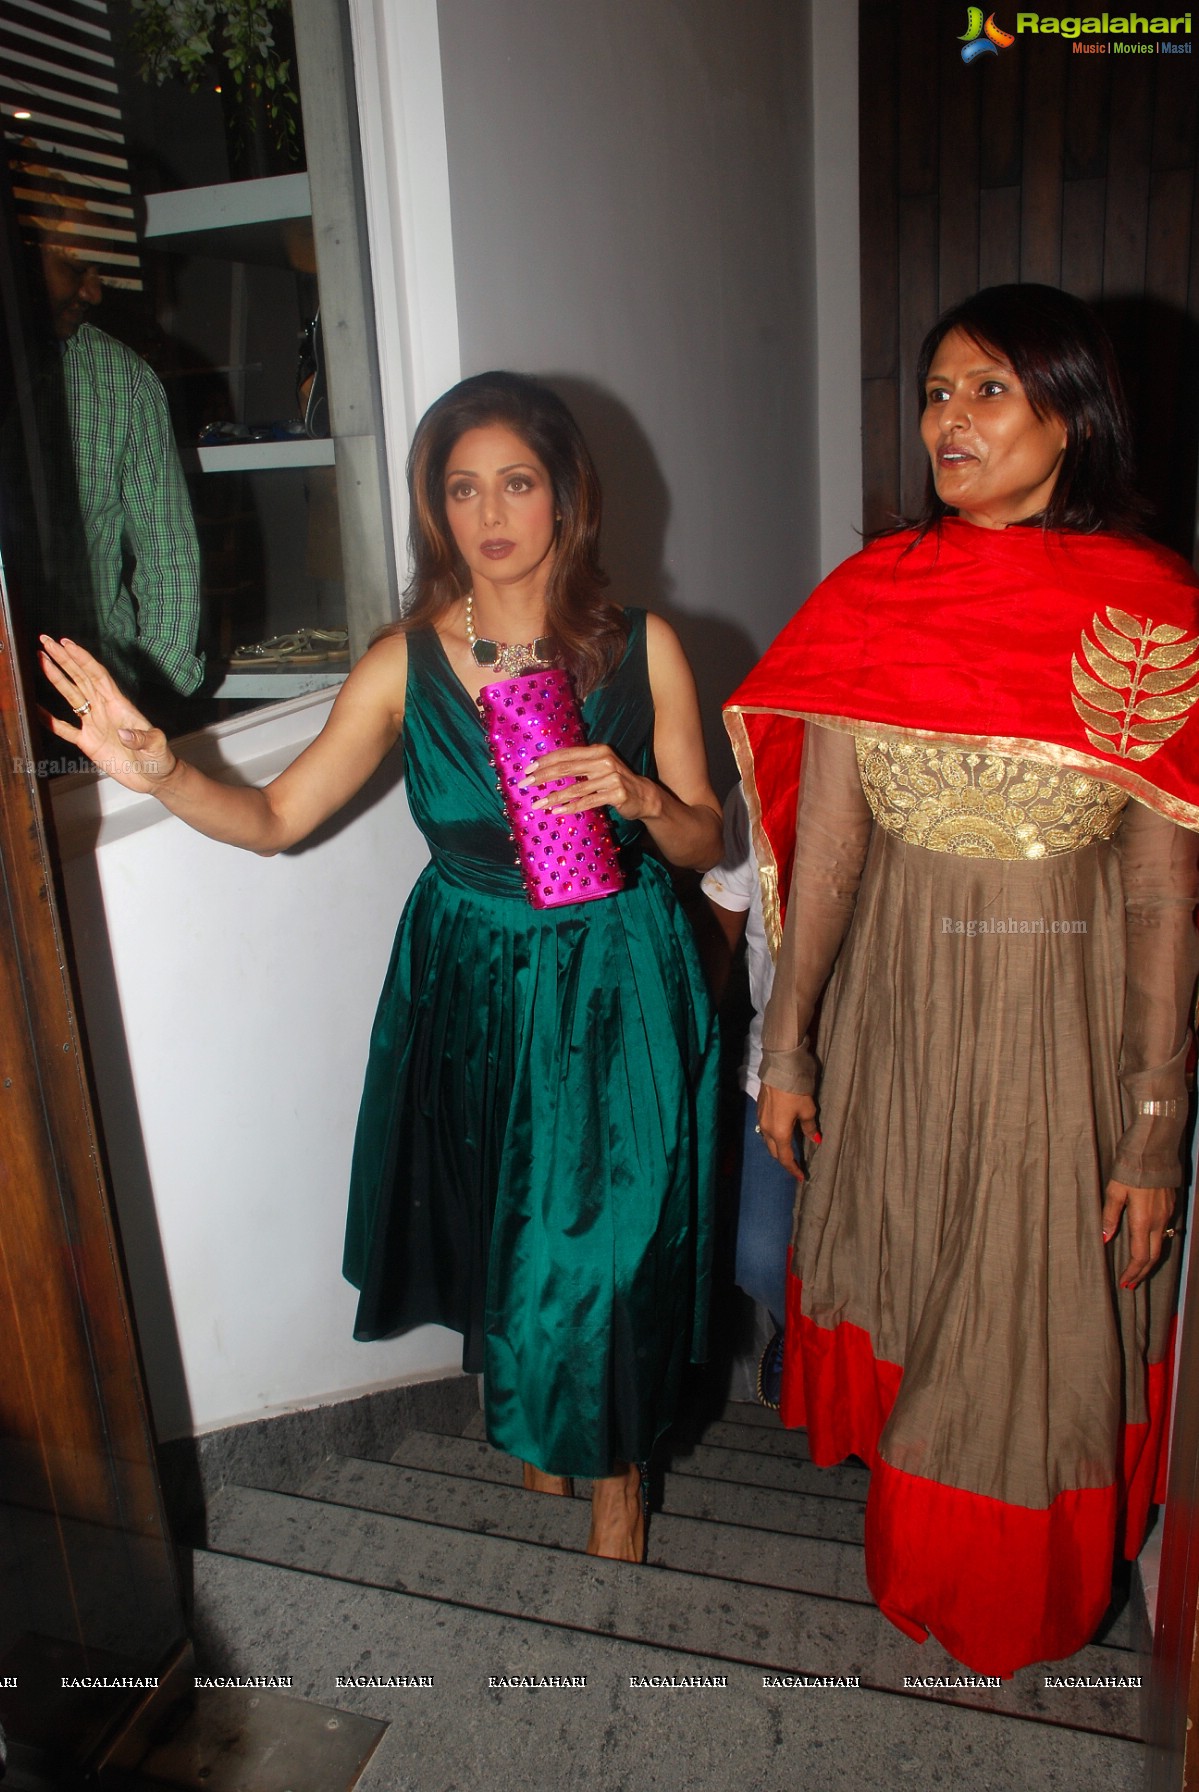 Sridevi Kapoor introduced a new clothing line, 'Mahe Ayyappan'at Angasutra